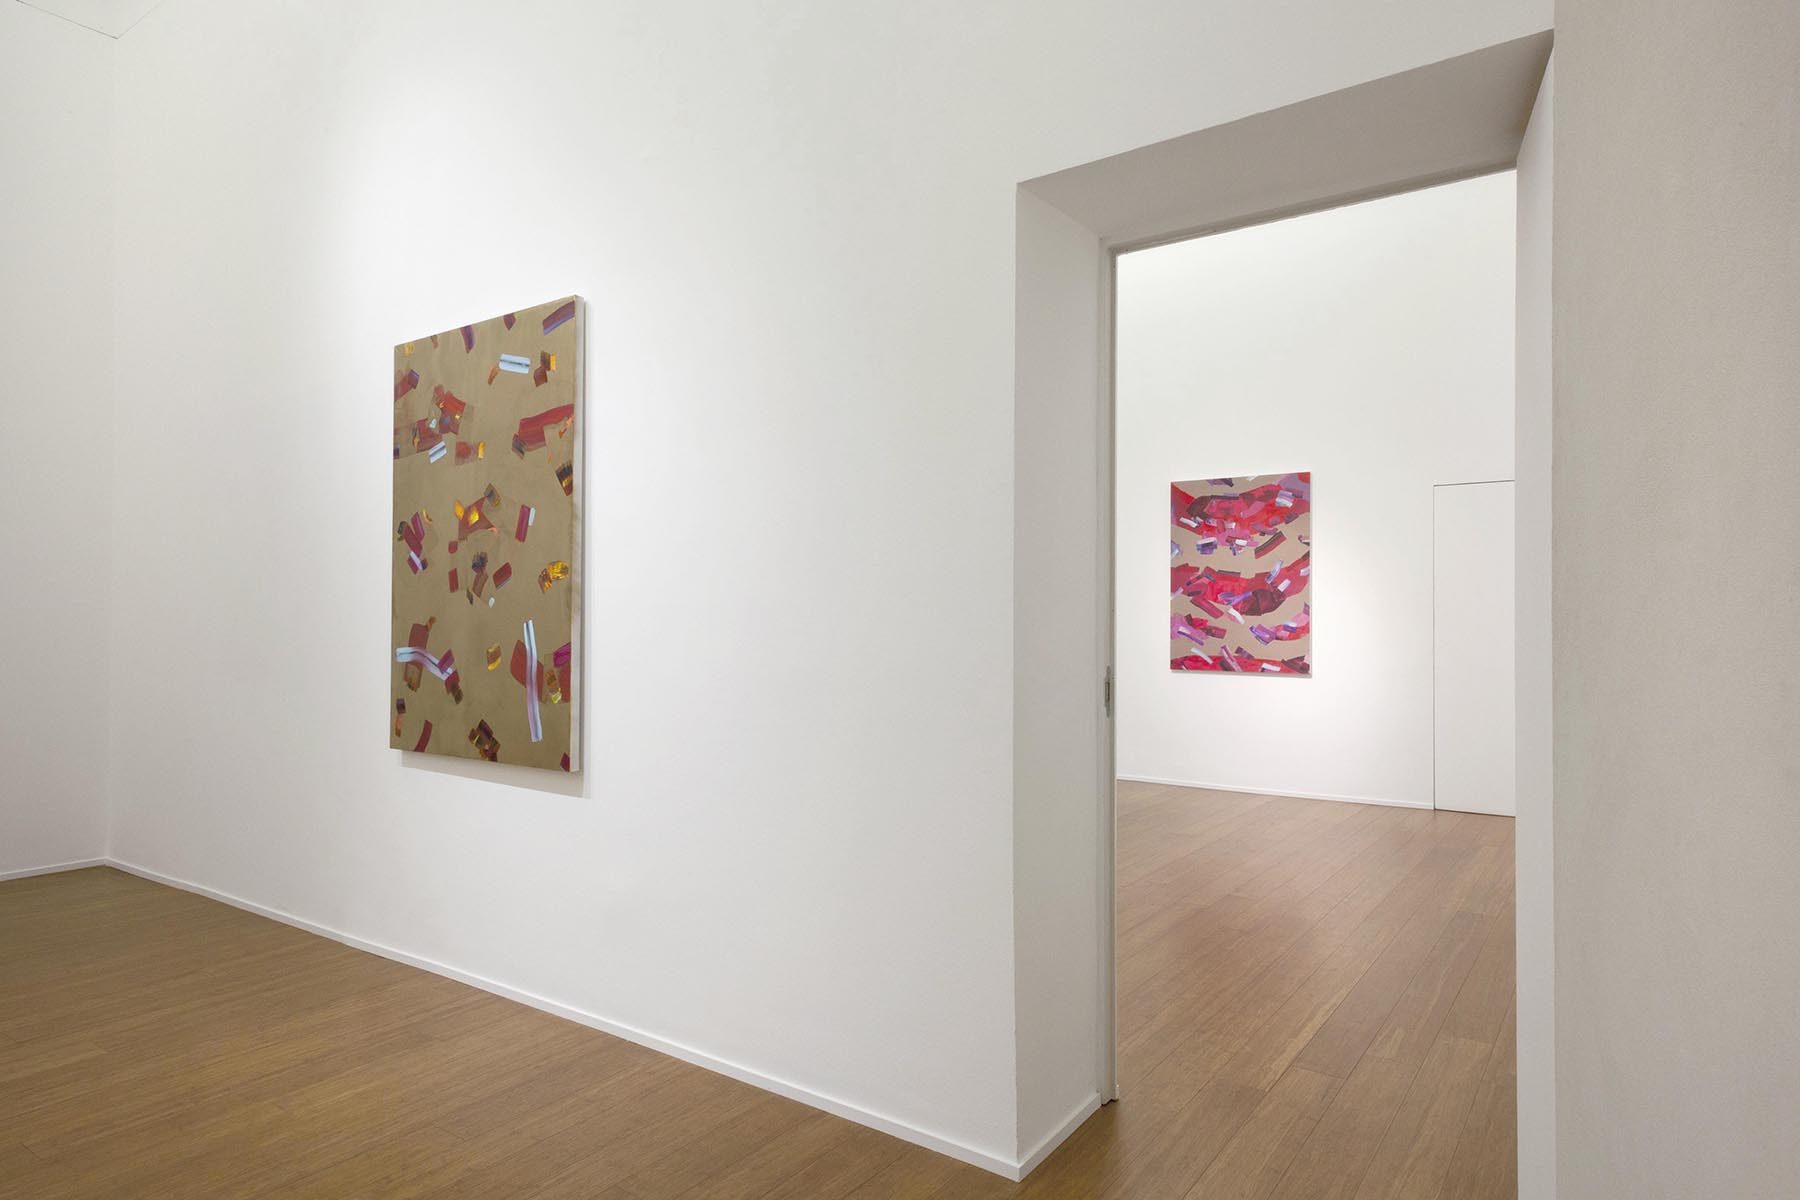 Isabella Nazzarri, Clinamen, 2017, installation view, ABC-Arte, Genoa